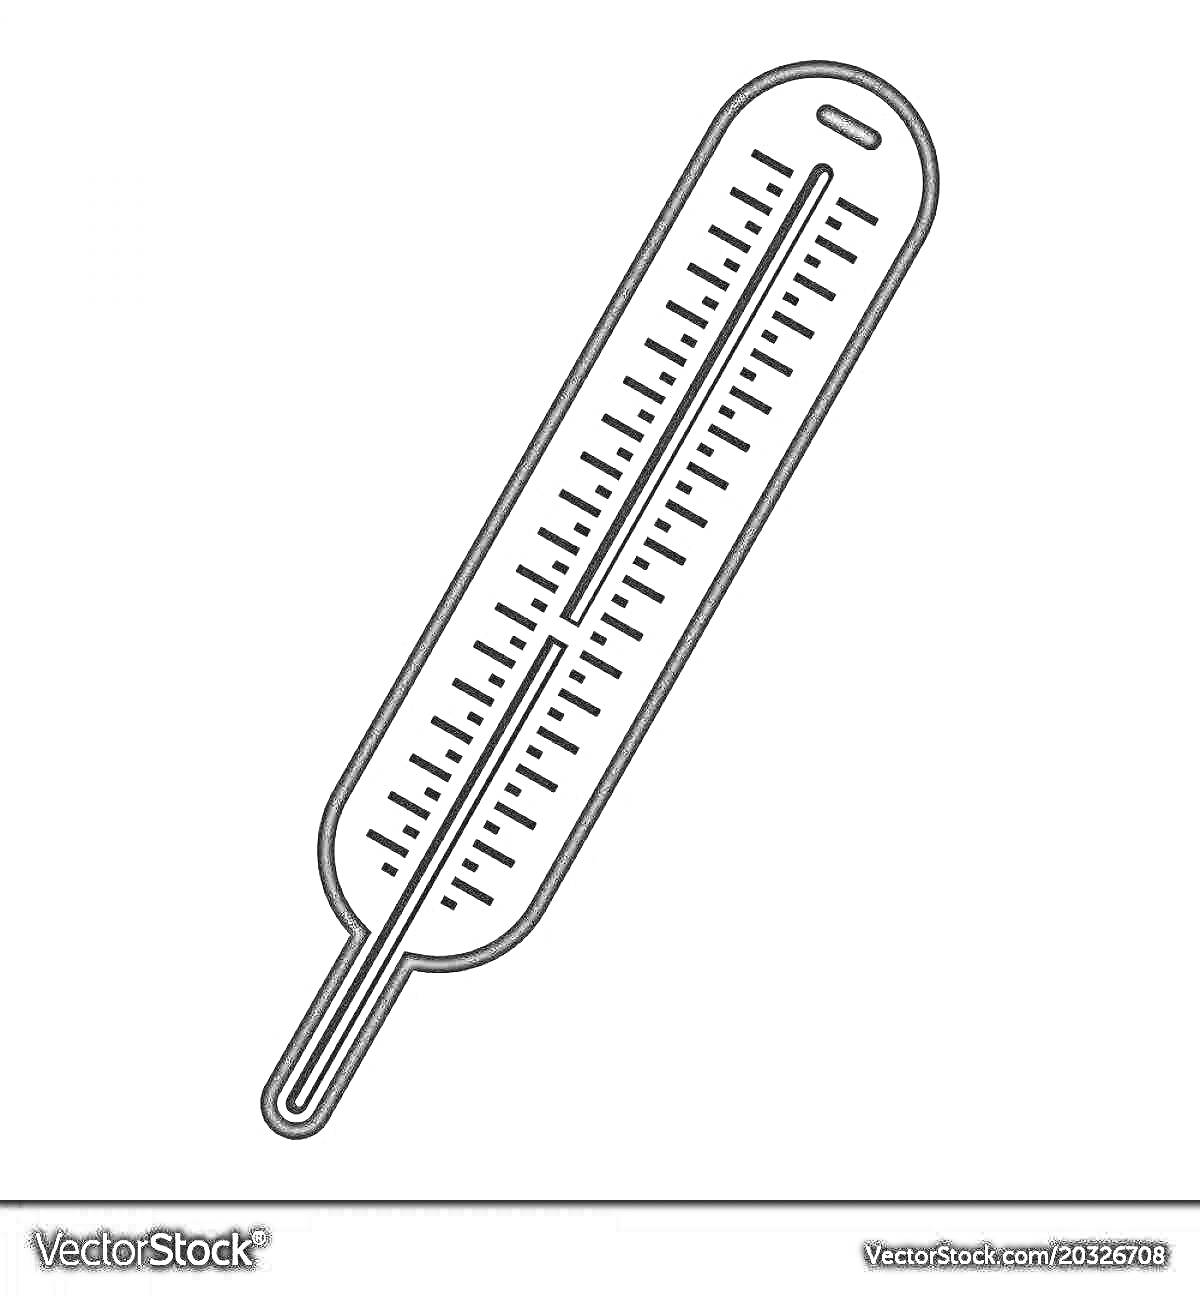 На раскраске изображено: Градусник, Термометр, Измерение температуры, Медицинский инструмент, Шкала, Простая линия